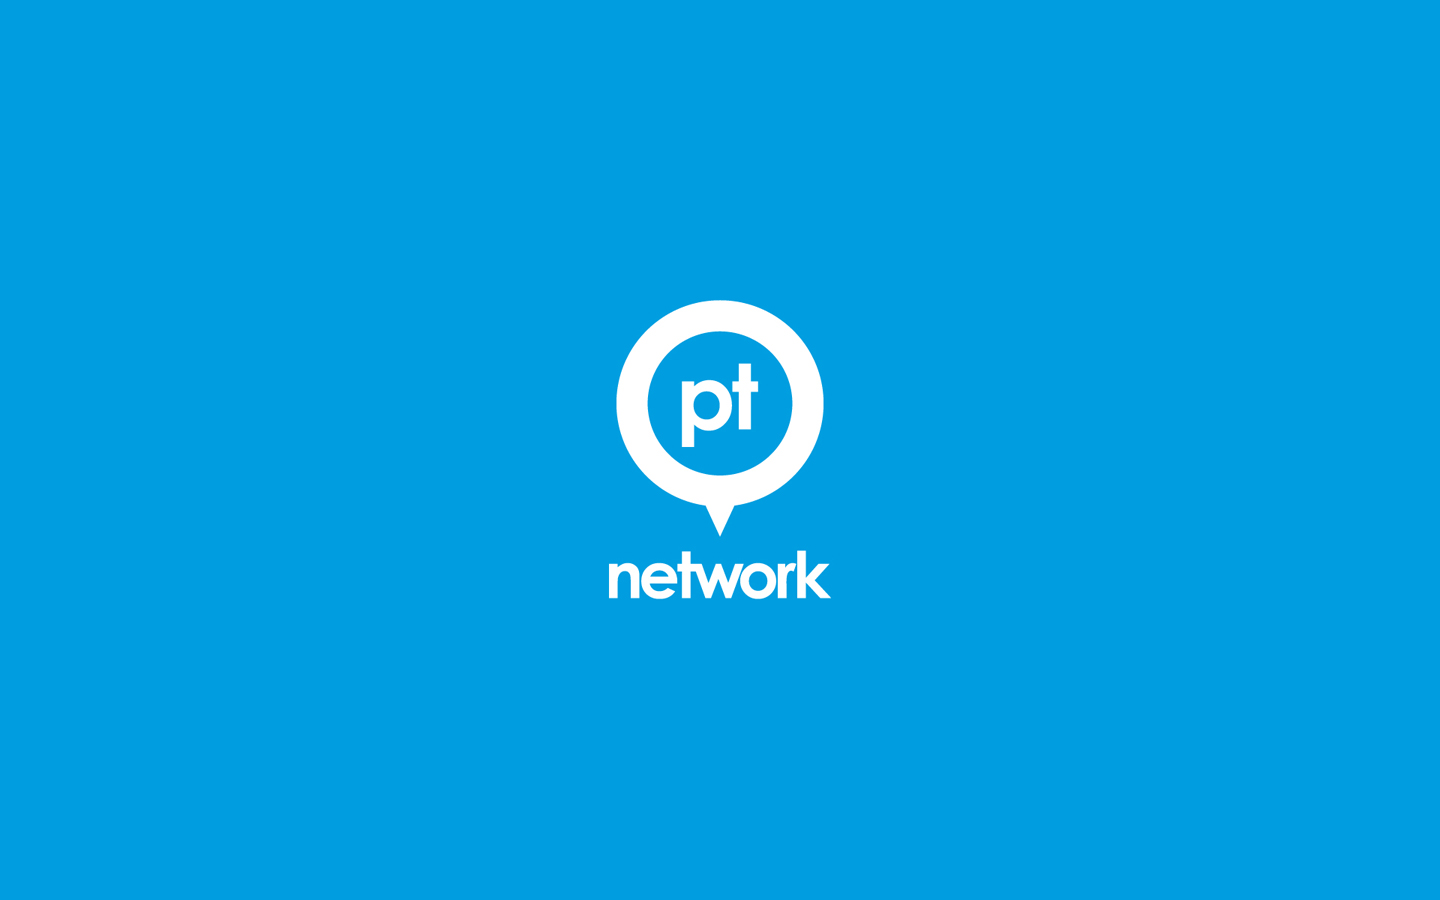 PT Network Logo Design in Mono White Reversed on Brand Colour